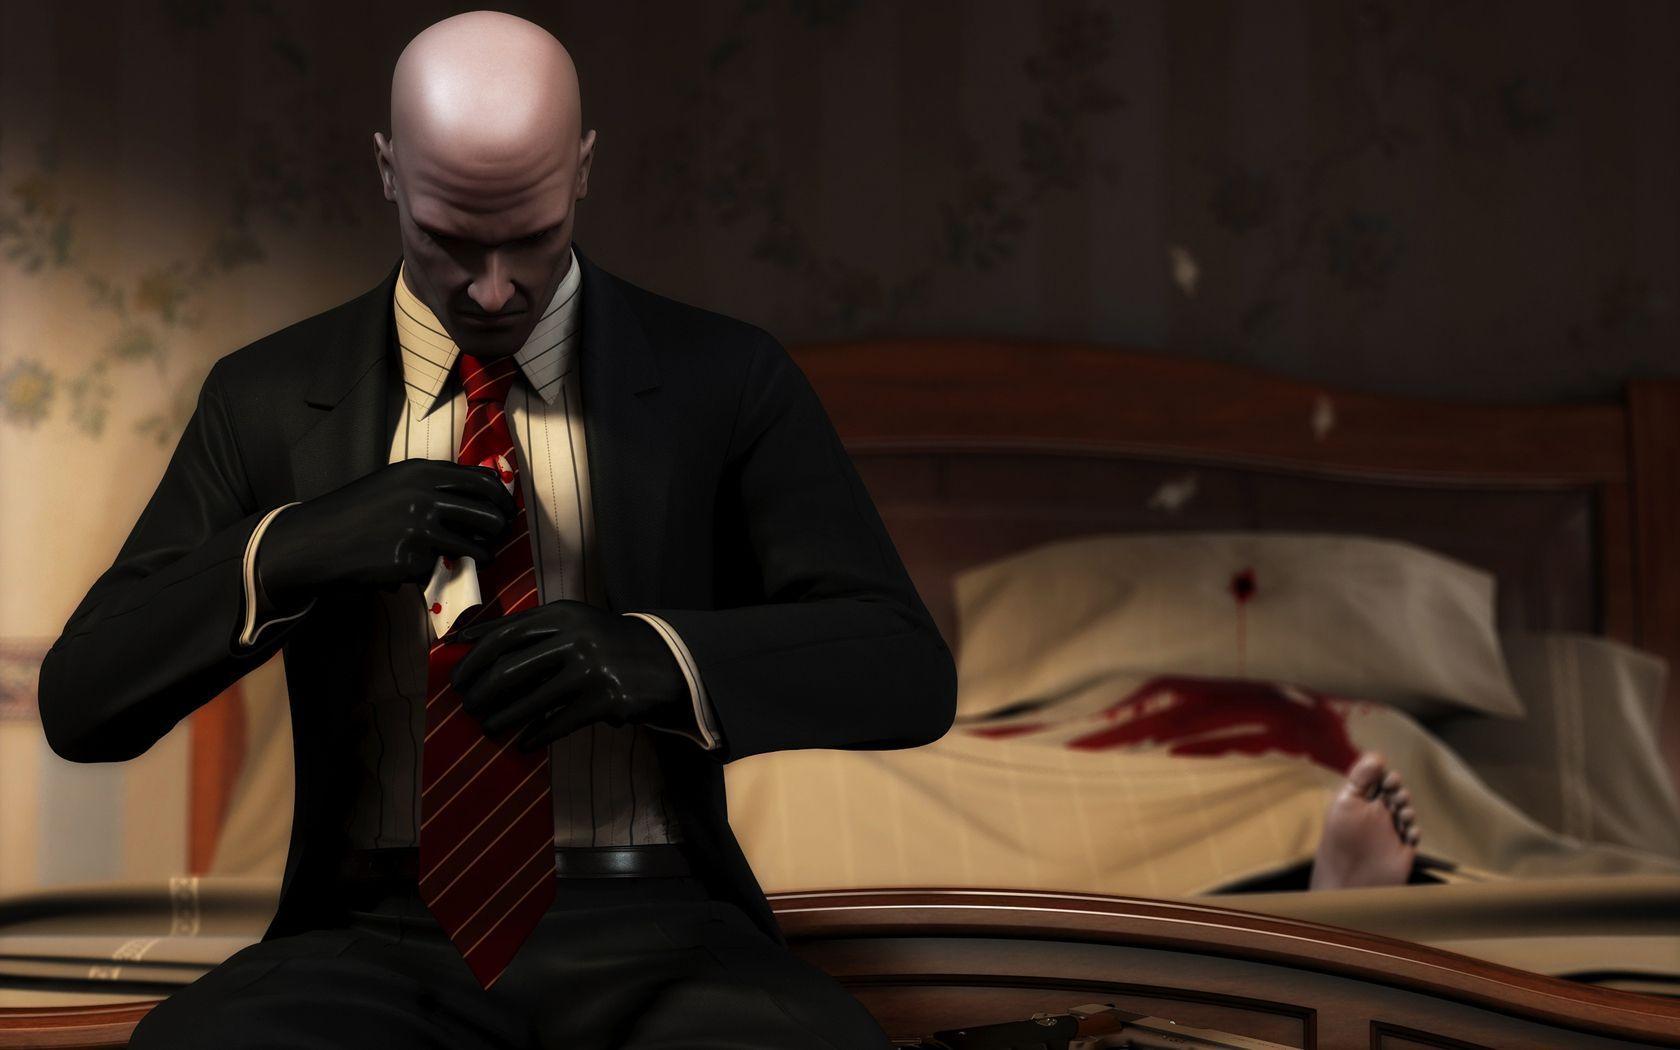 Hitman Blood Money Wallpaper, blood, corpse, gun. HD Desktop